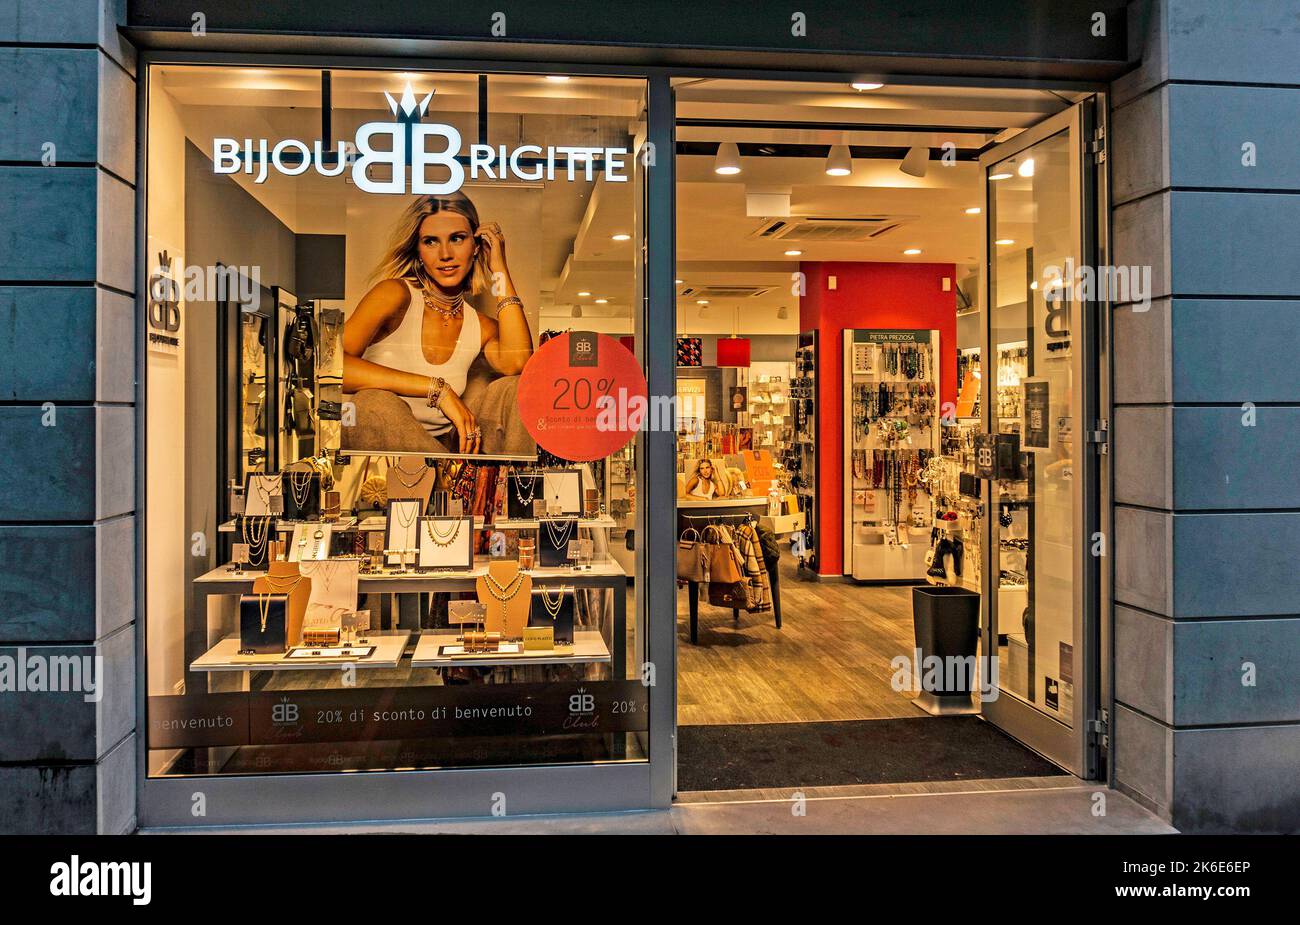 Un magasin d'accessoires de vêtements bijou Brigette sur via Roma, Lecco, Italie. Banque D'Images